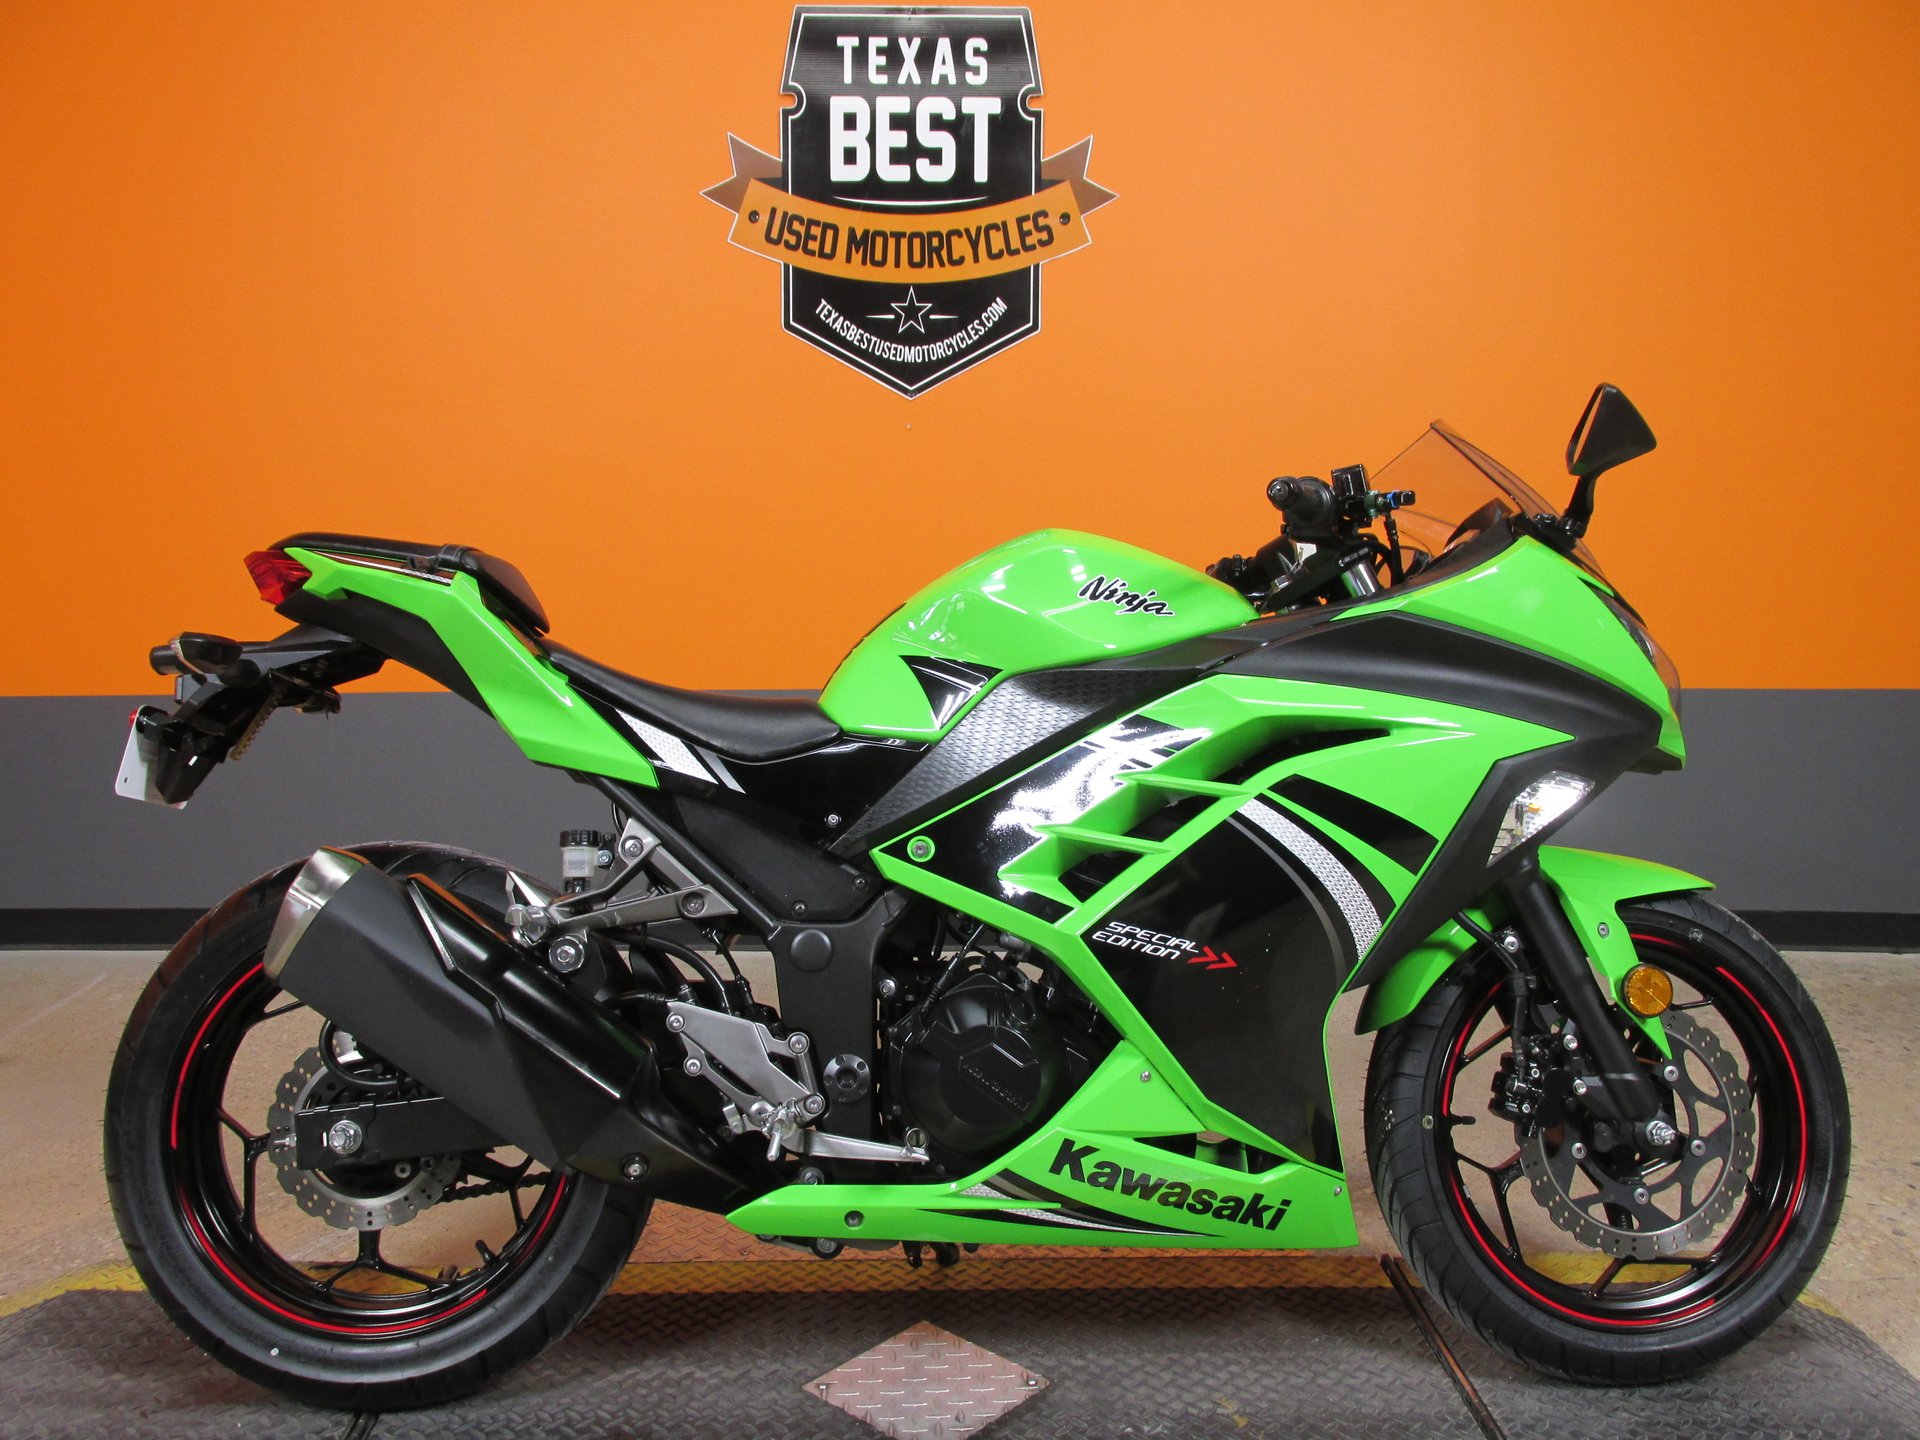 2014 Kawasaki Ninja | American Motorcycle Trading Company - Used Harley  Davidson Motorcycles